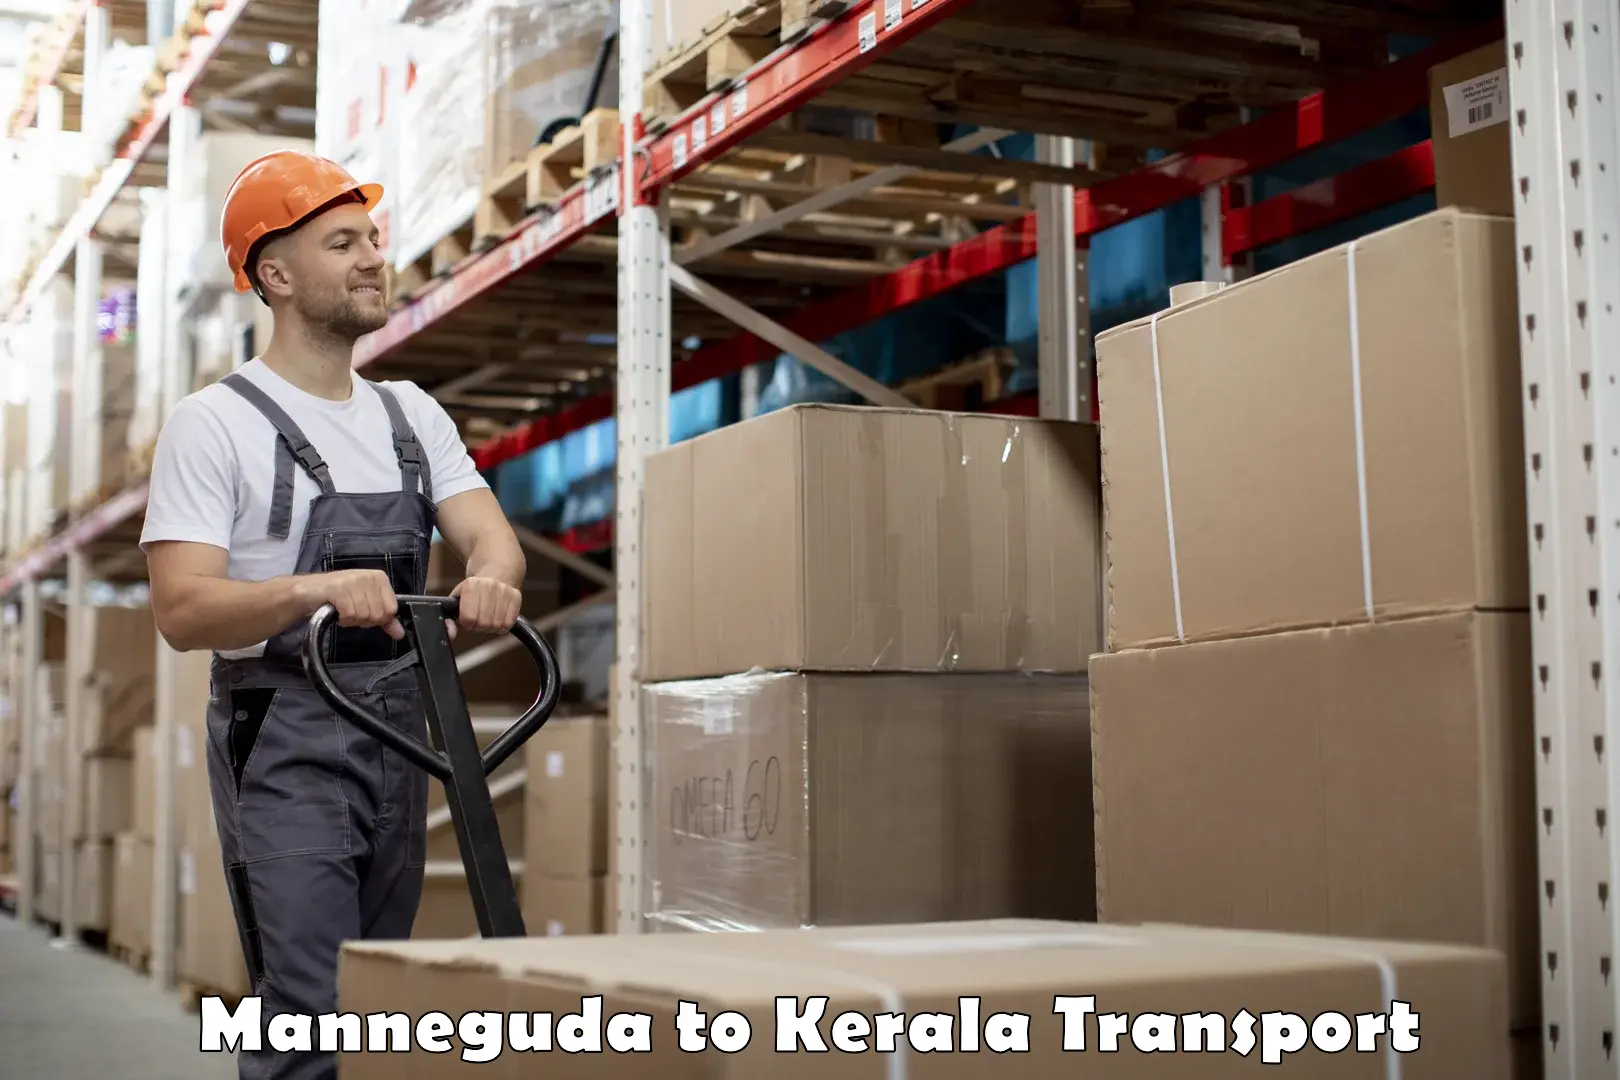 Daily parcel service transport Manneguda to Thiruvananthapuram